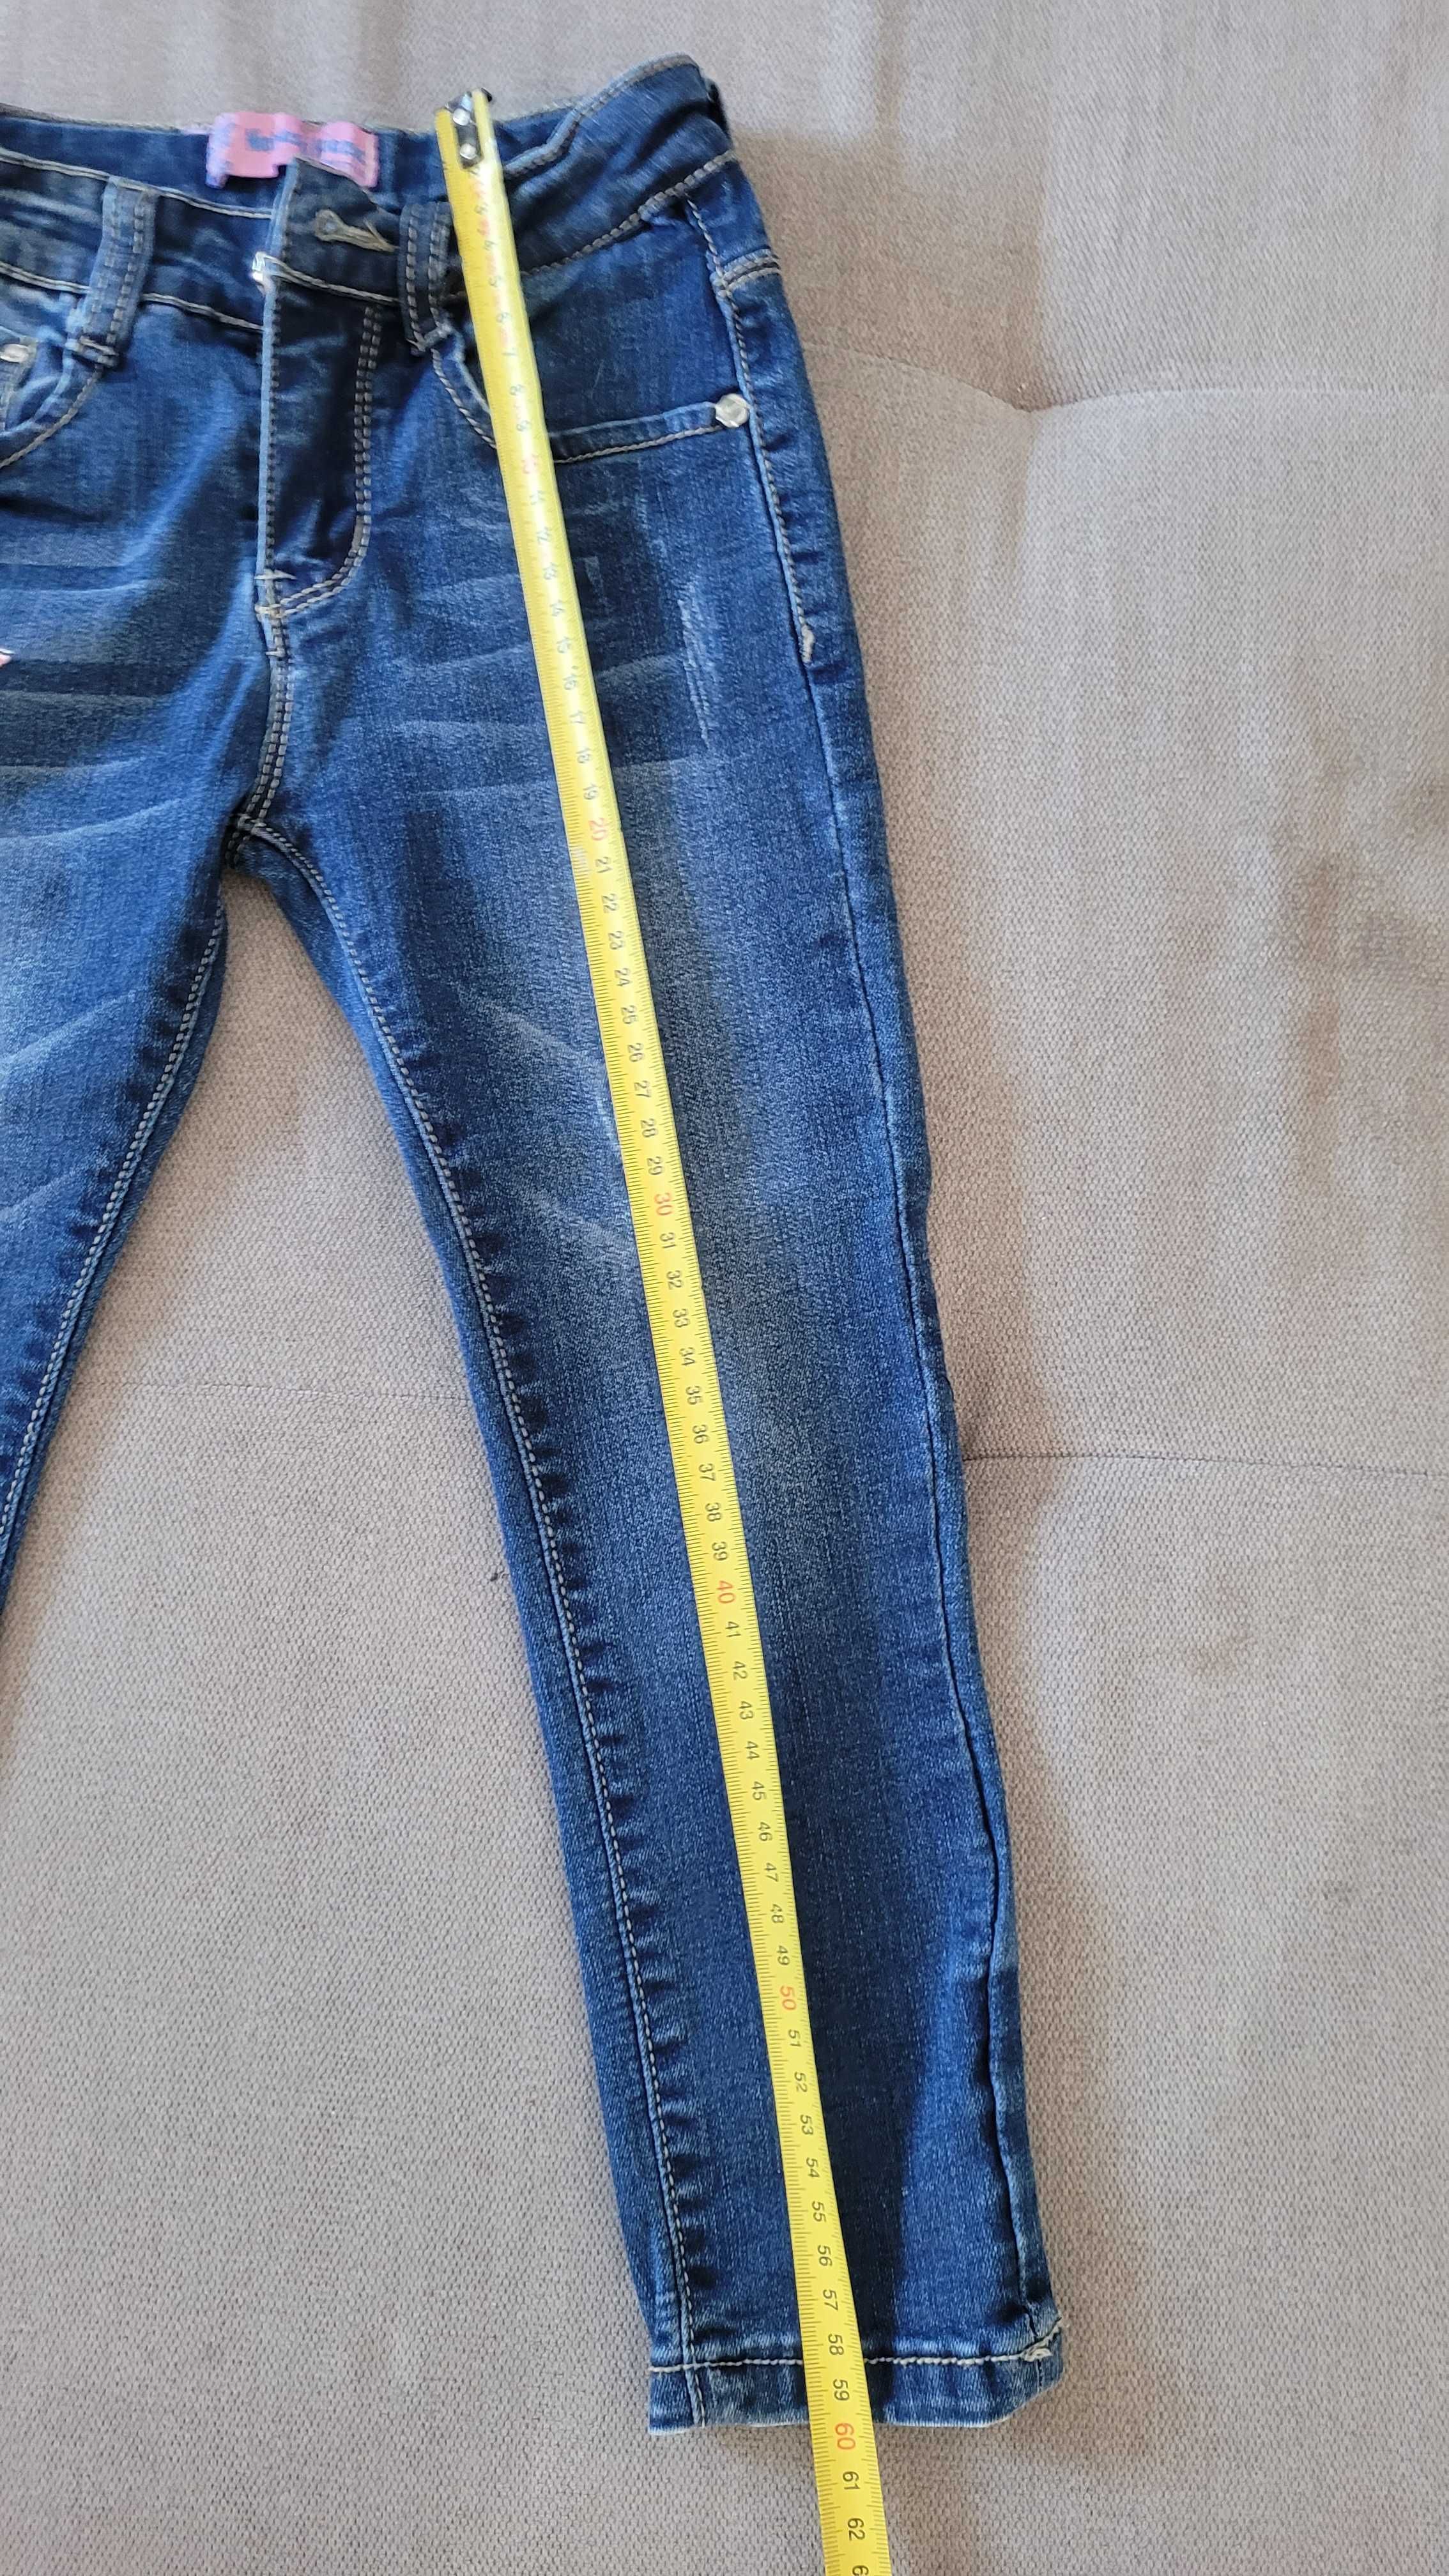 Spodnie jeansowe dla dziewczynki 110/116 jak nowe